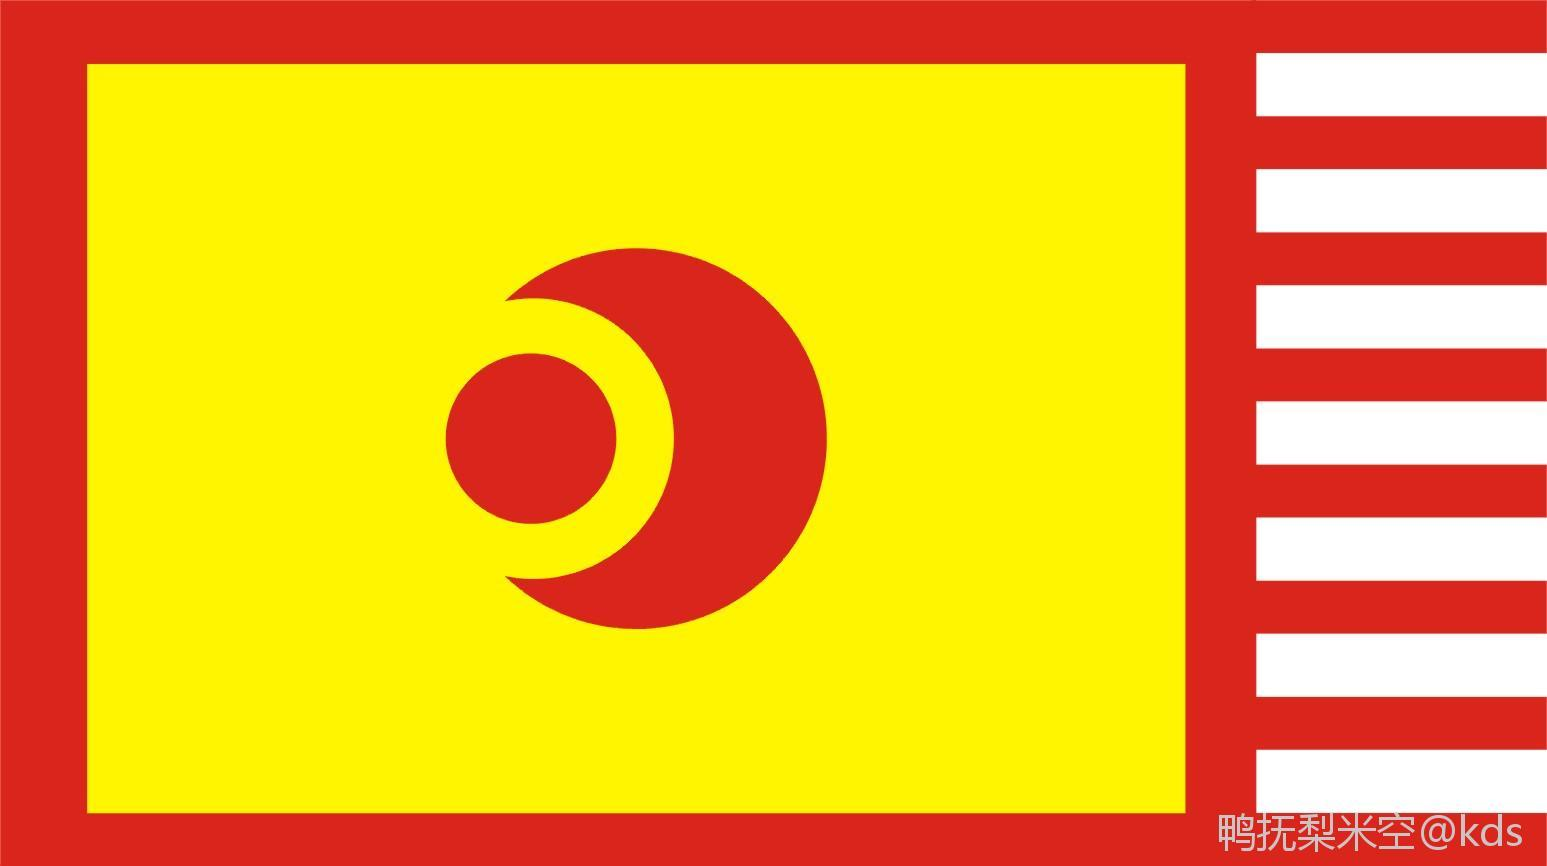 中国日月旗及其他相关旗帜(某些目前无证据表明曾被使用)